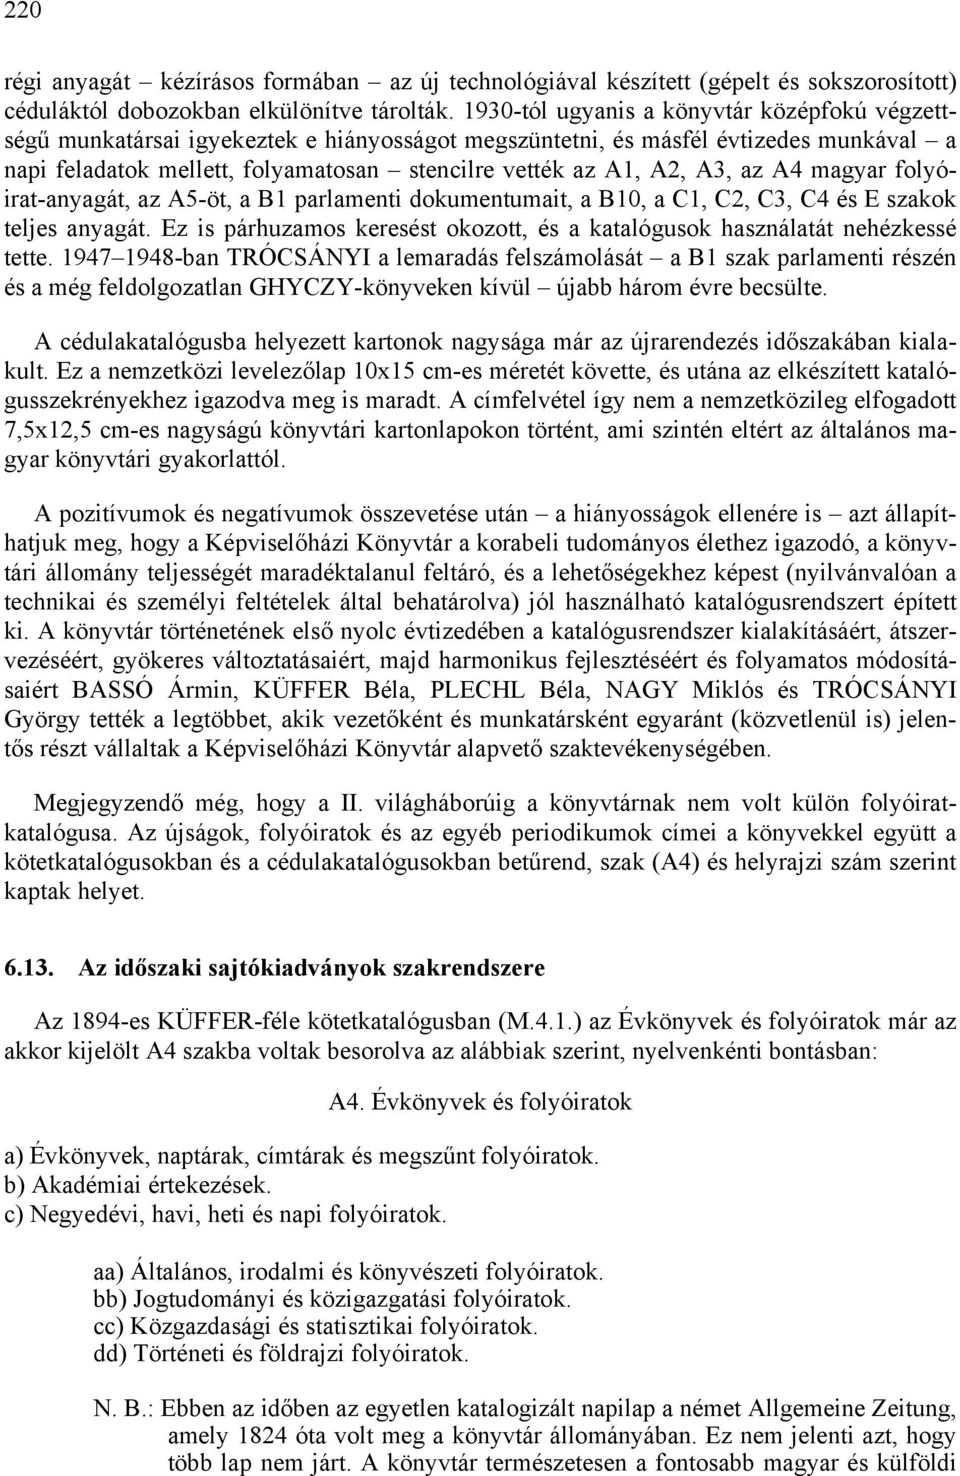 A3, az A4 magyar folyóirat-anyagát, az A5-öt, a B1 parlamenti dokumentumait, a B10, a C1, C2, C3, C4 és E szakok teljes anyagát.